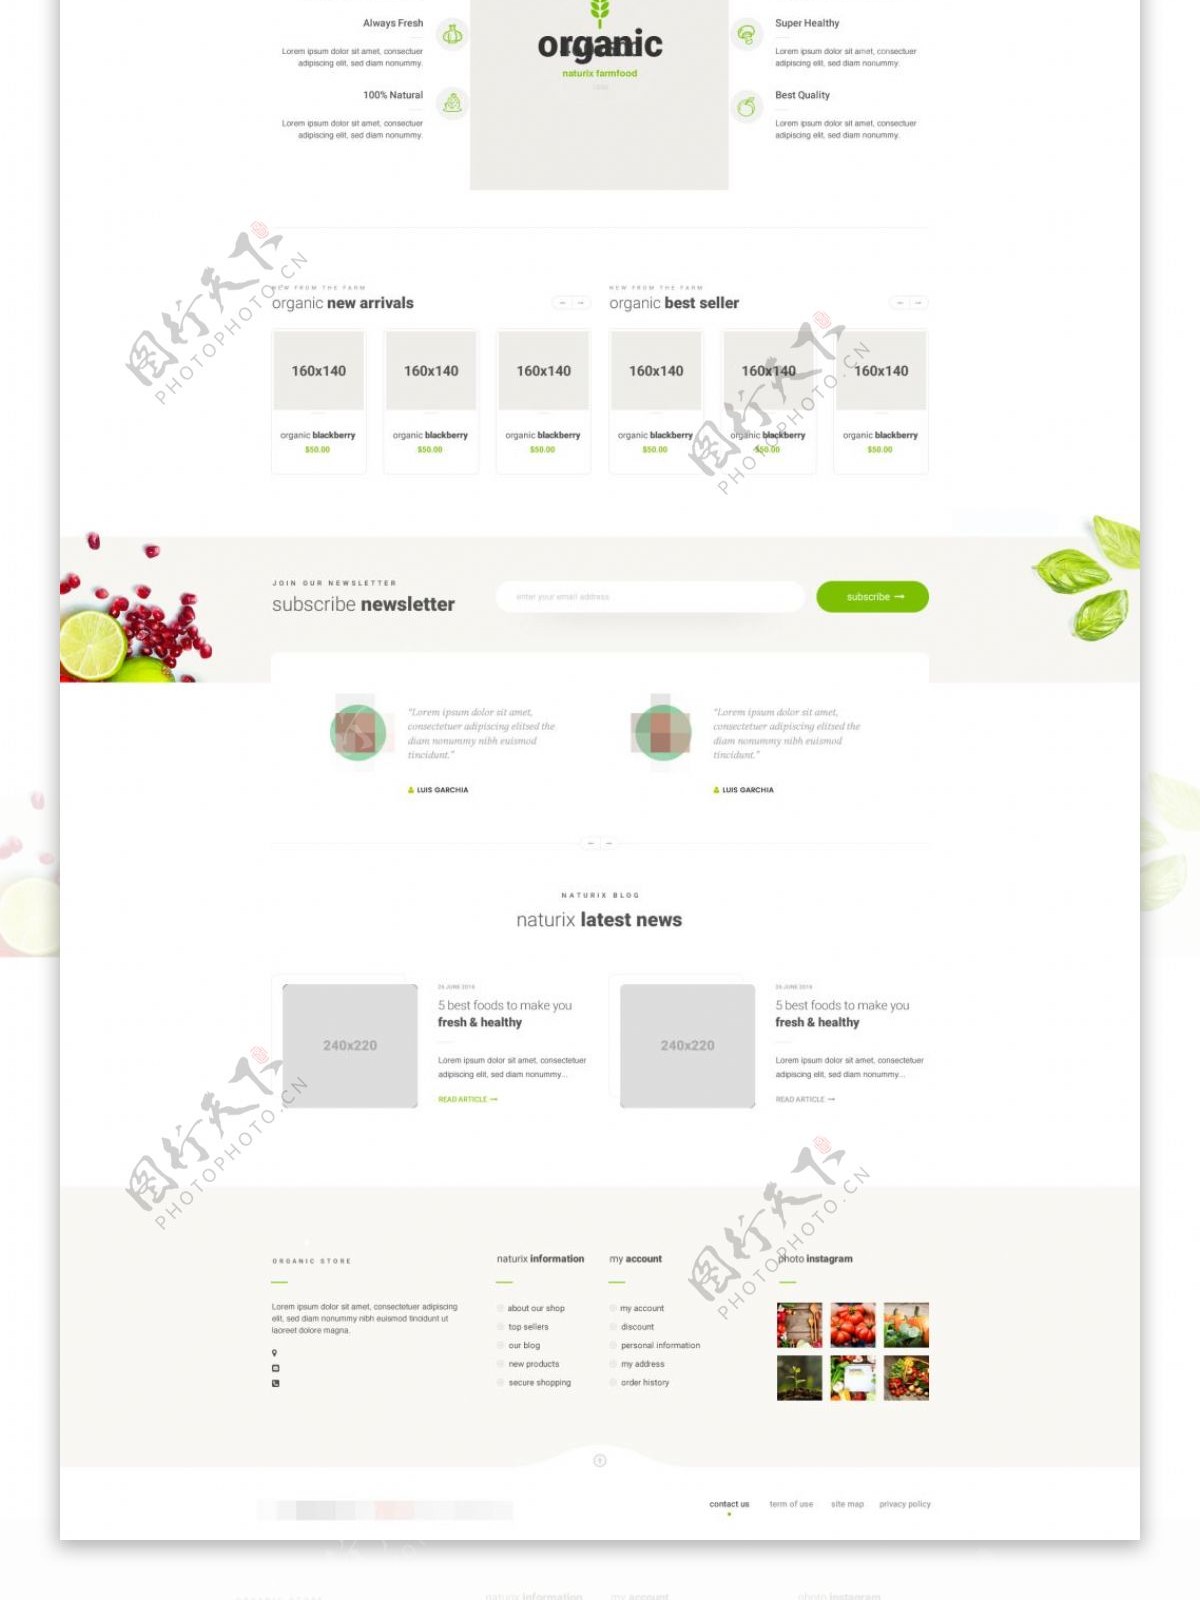 天然有机食品网站主页页面psd模板